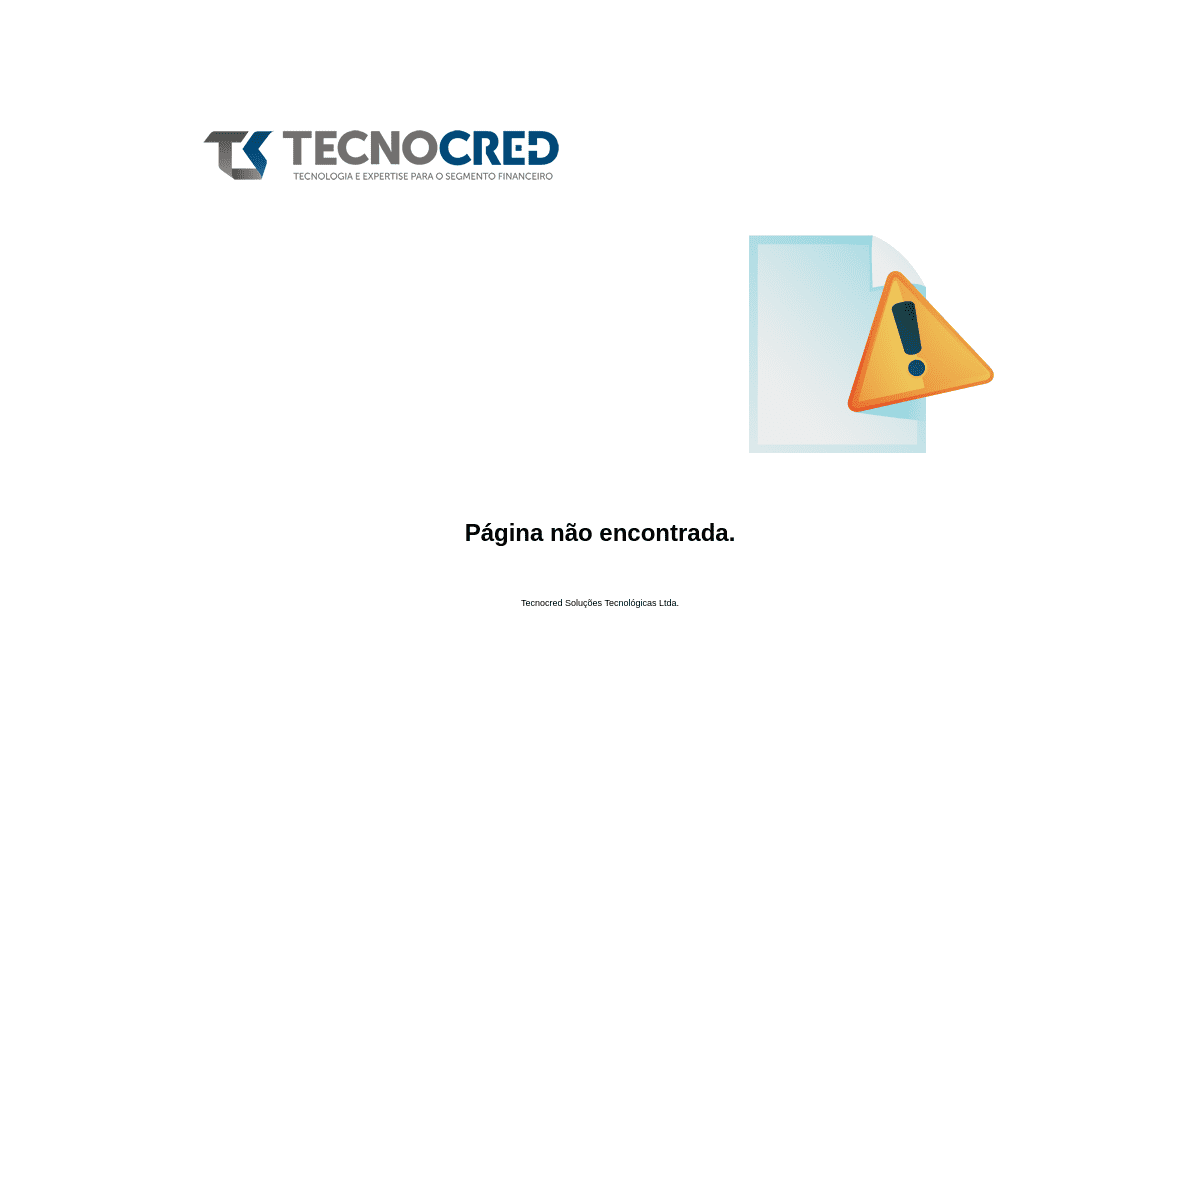 Página não encontrada | Tecnocred Soluções Tecnológicas Ltda.